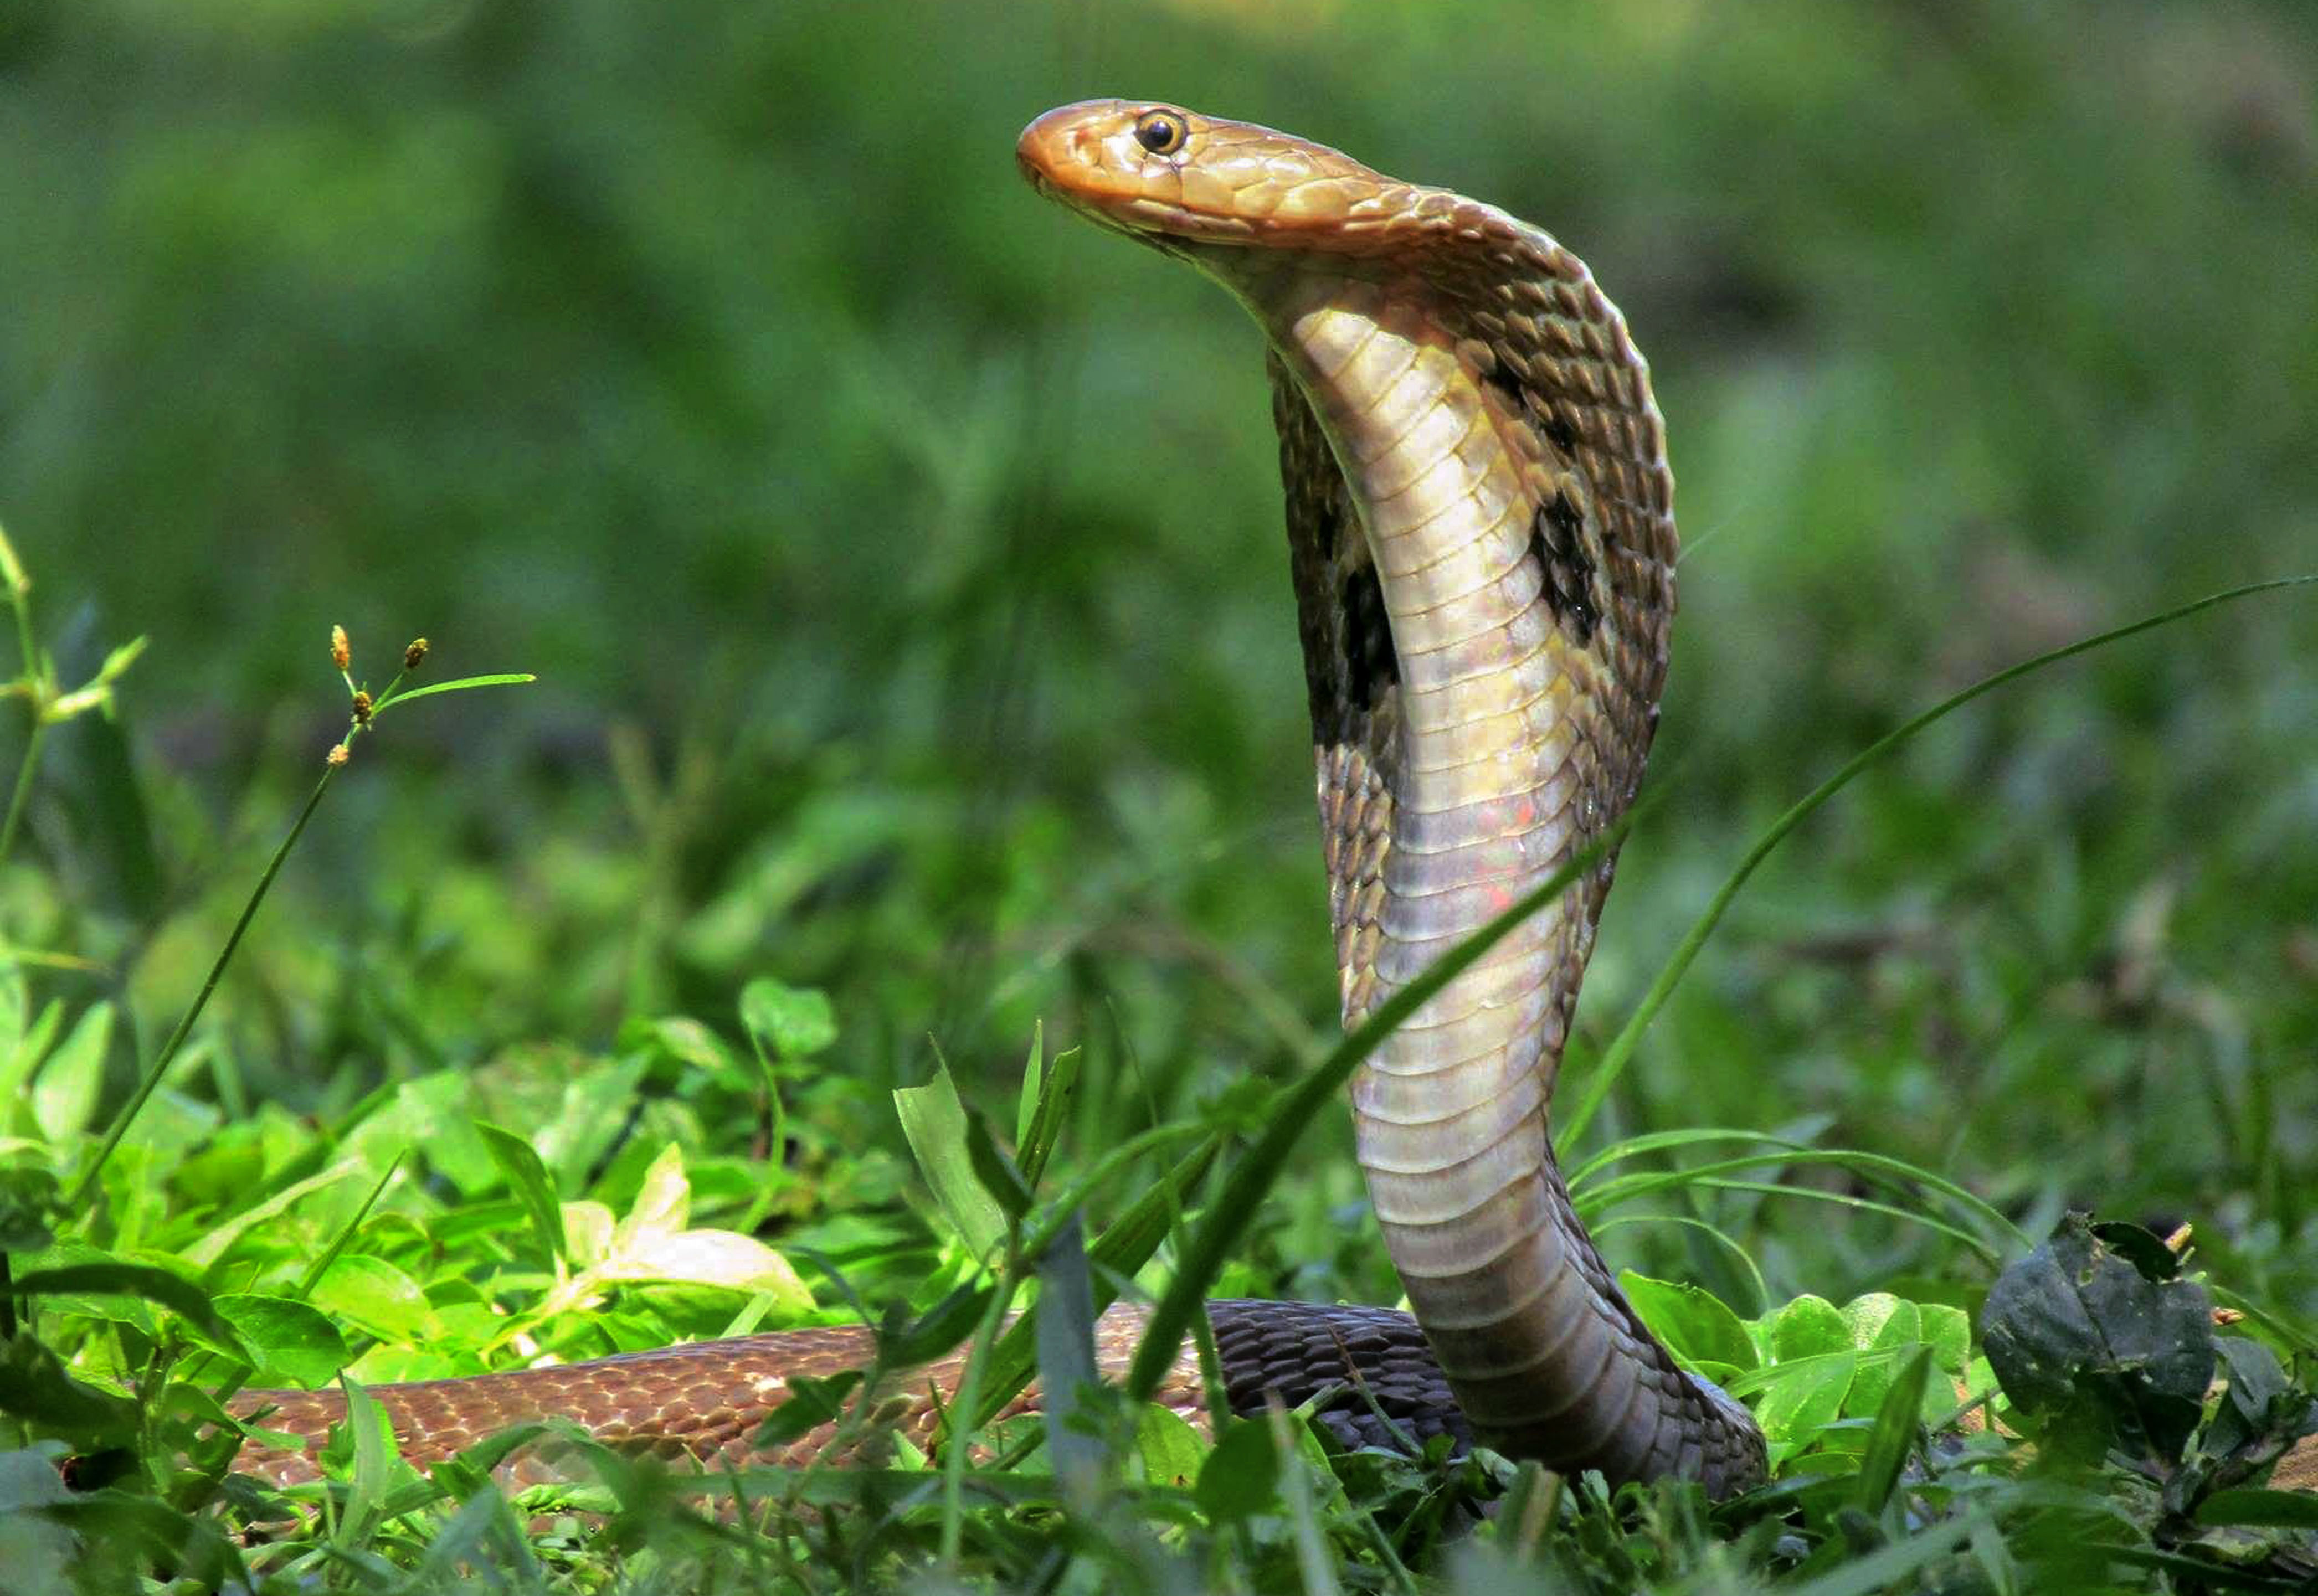 Hình ảnh những loài rắn cực độc và cách chữa trị khi bị cắn (P2) | Giáo dục  Việt Nam